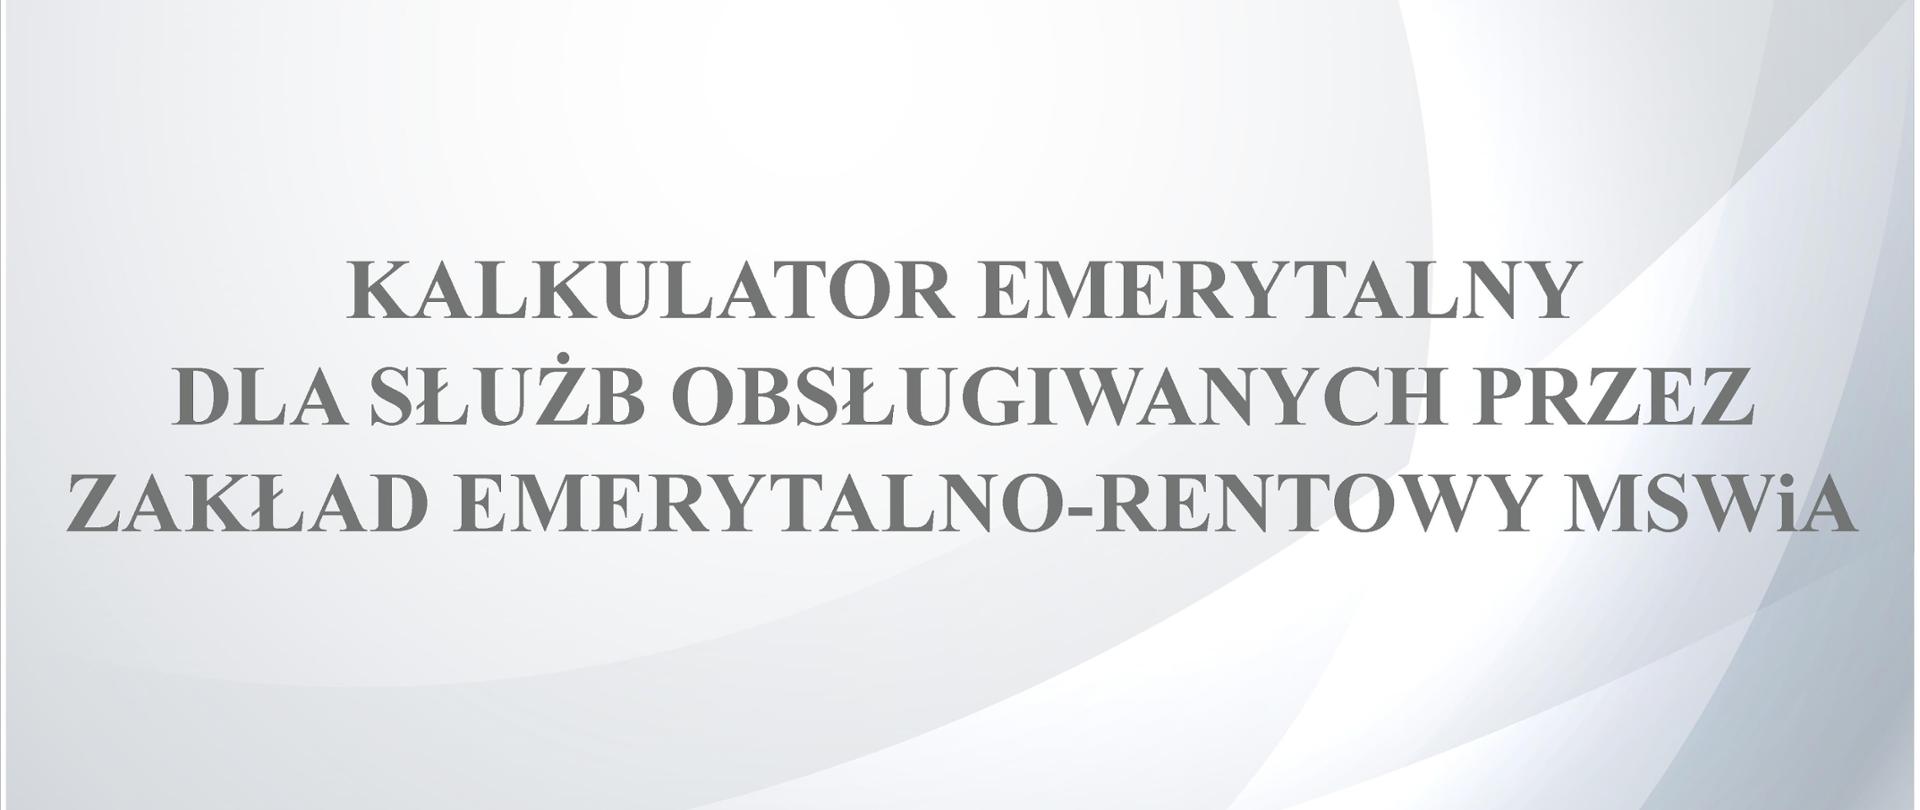 Kalkulator emerytalny dla służ obsługiwanych przez Zakład Emerytalno-Rentowy MSWiA